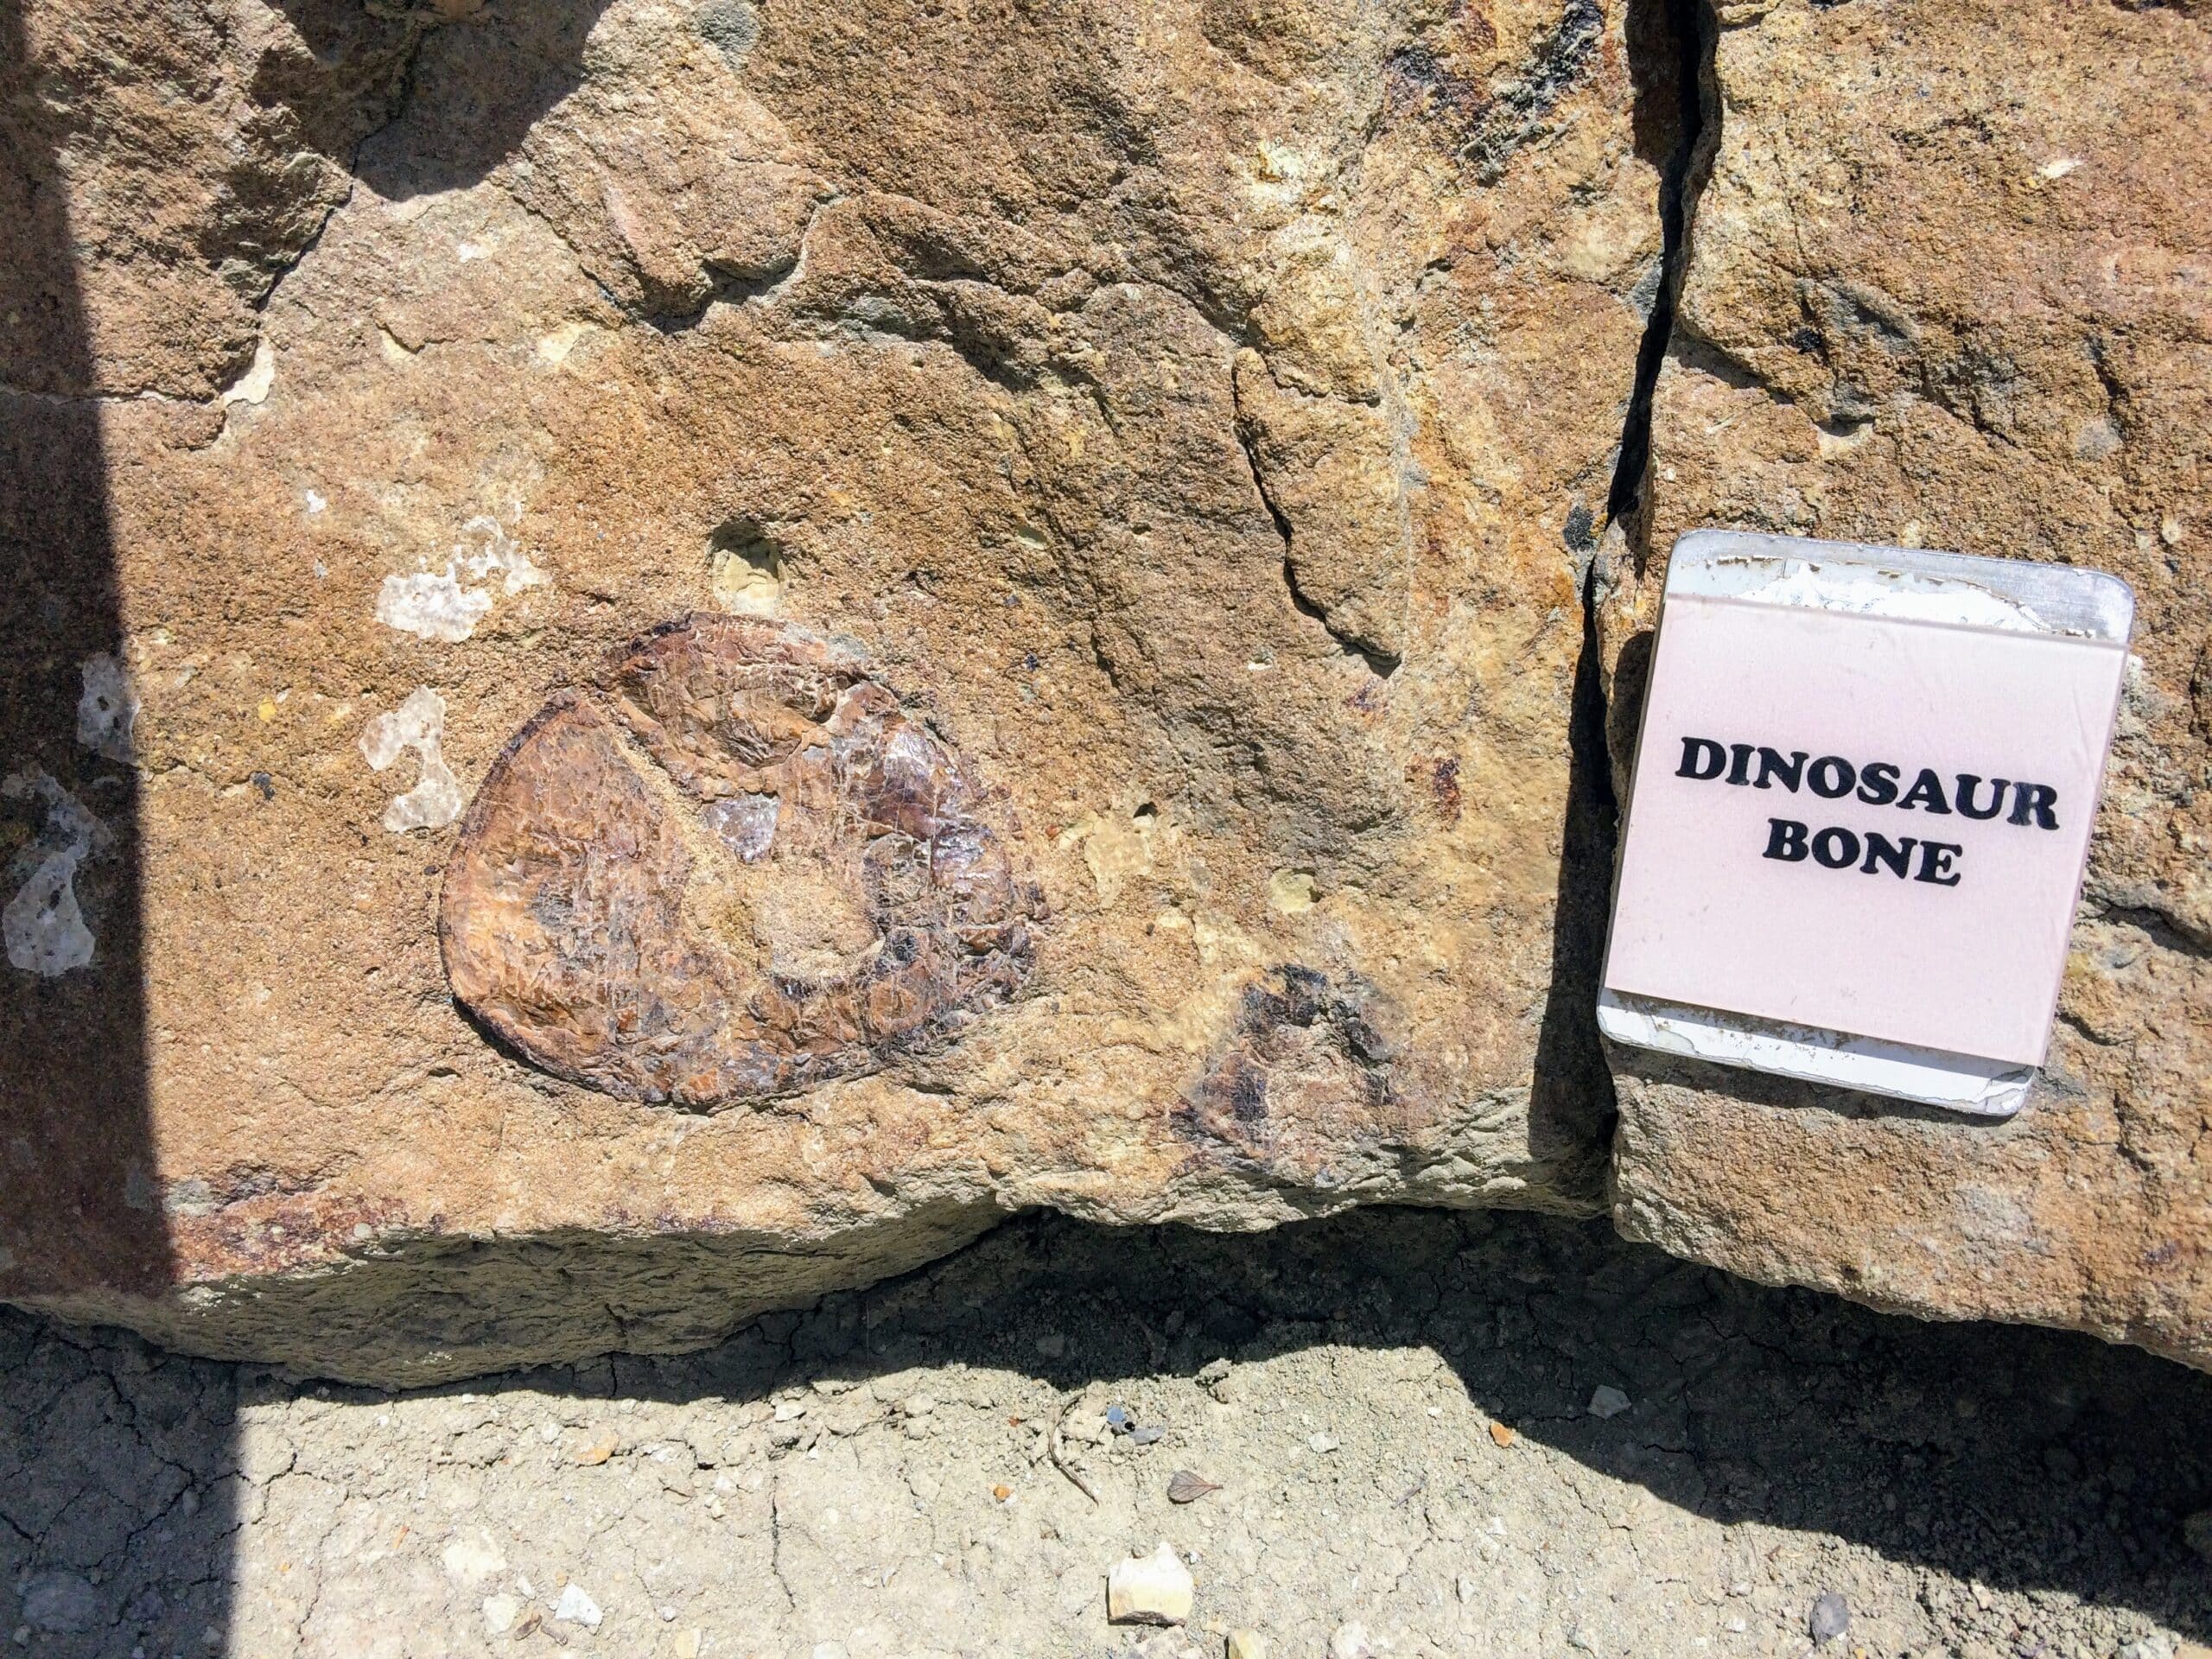 Fossilized dinosaur bone at Dinosaur Ridge Trail. Photo: Breana Johnson